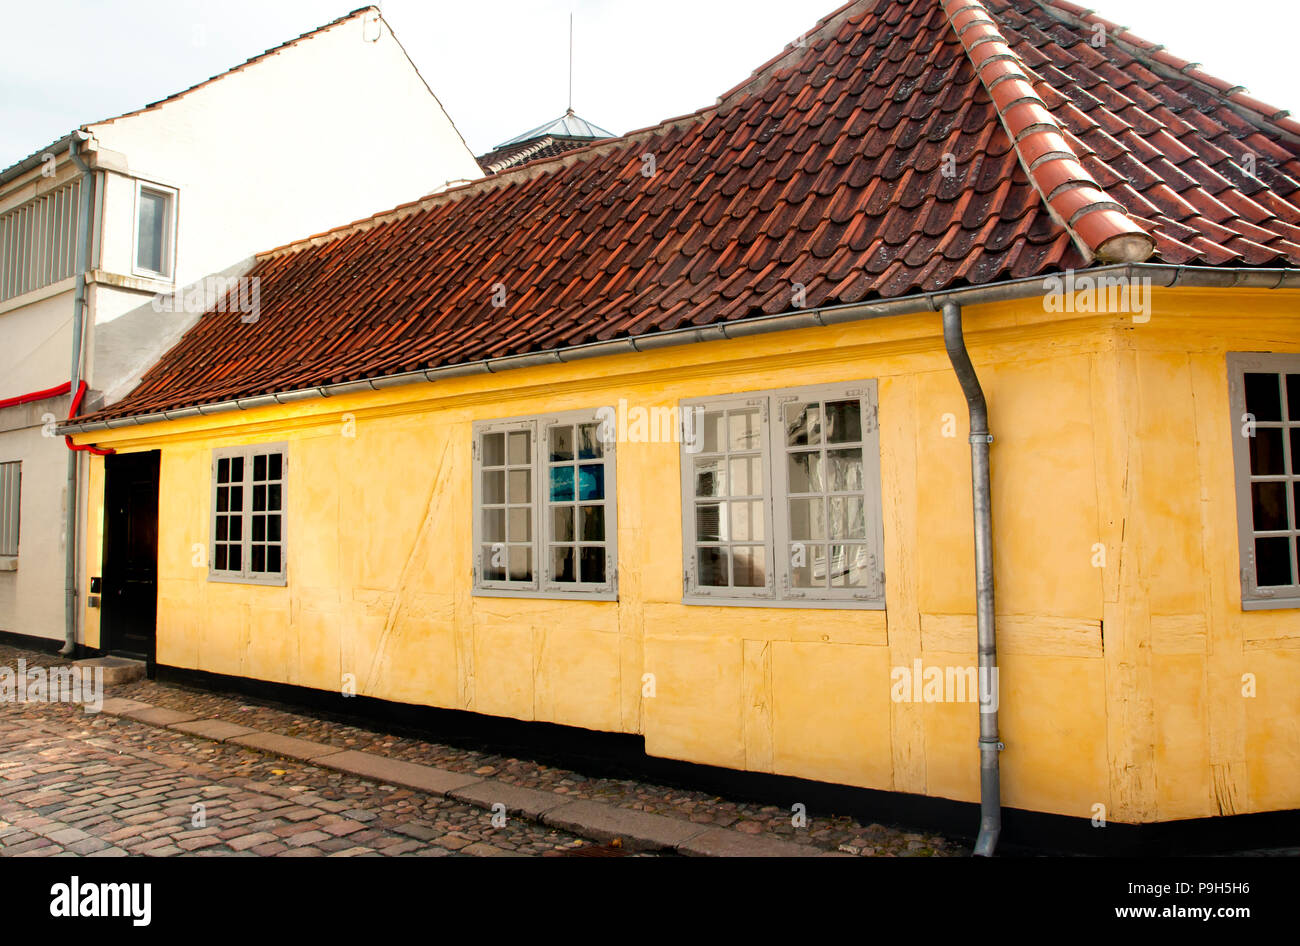 Altstadt von Odense, Dänemark. HC Andersens Heimatstadt. Gelbes Haus ist der Geburtsort von Hans Christian Andersen. Stockfoto